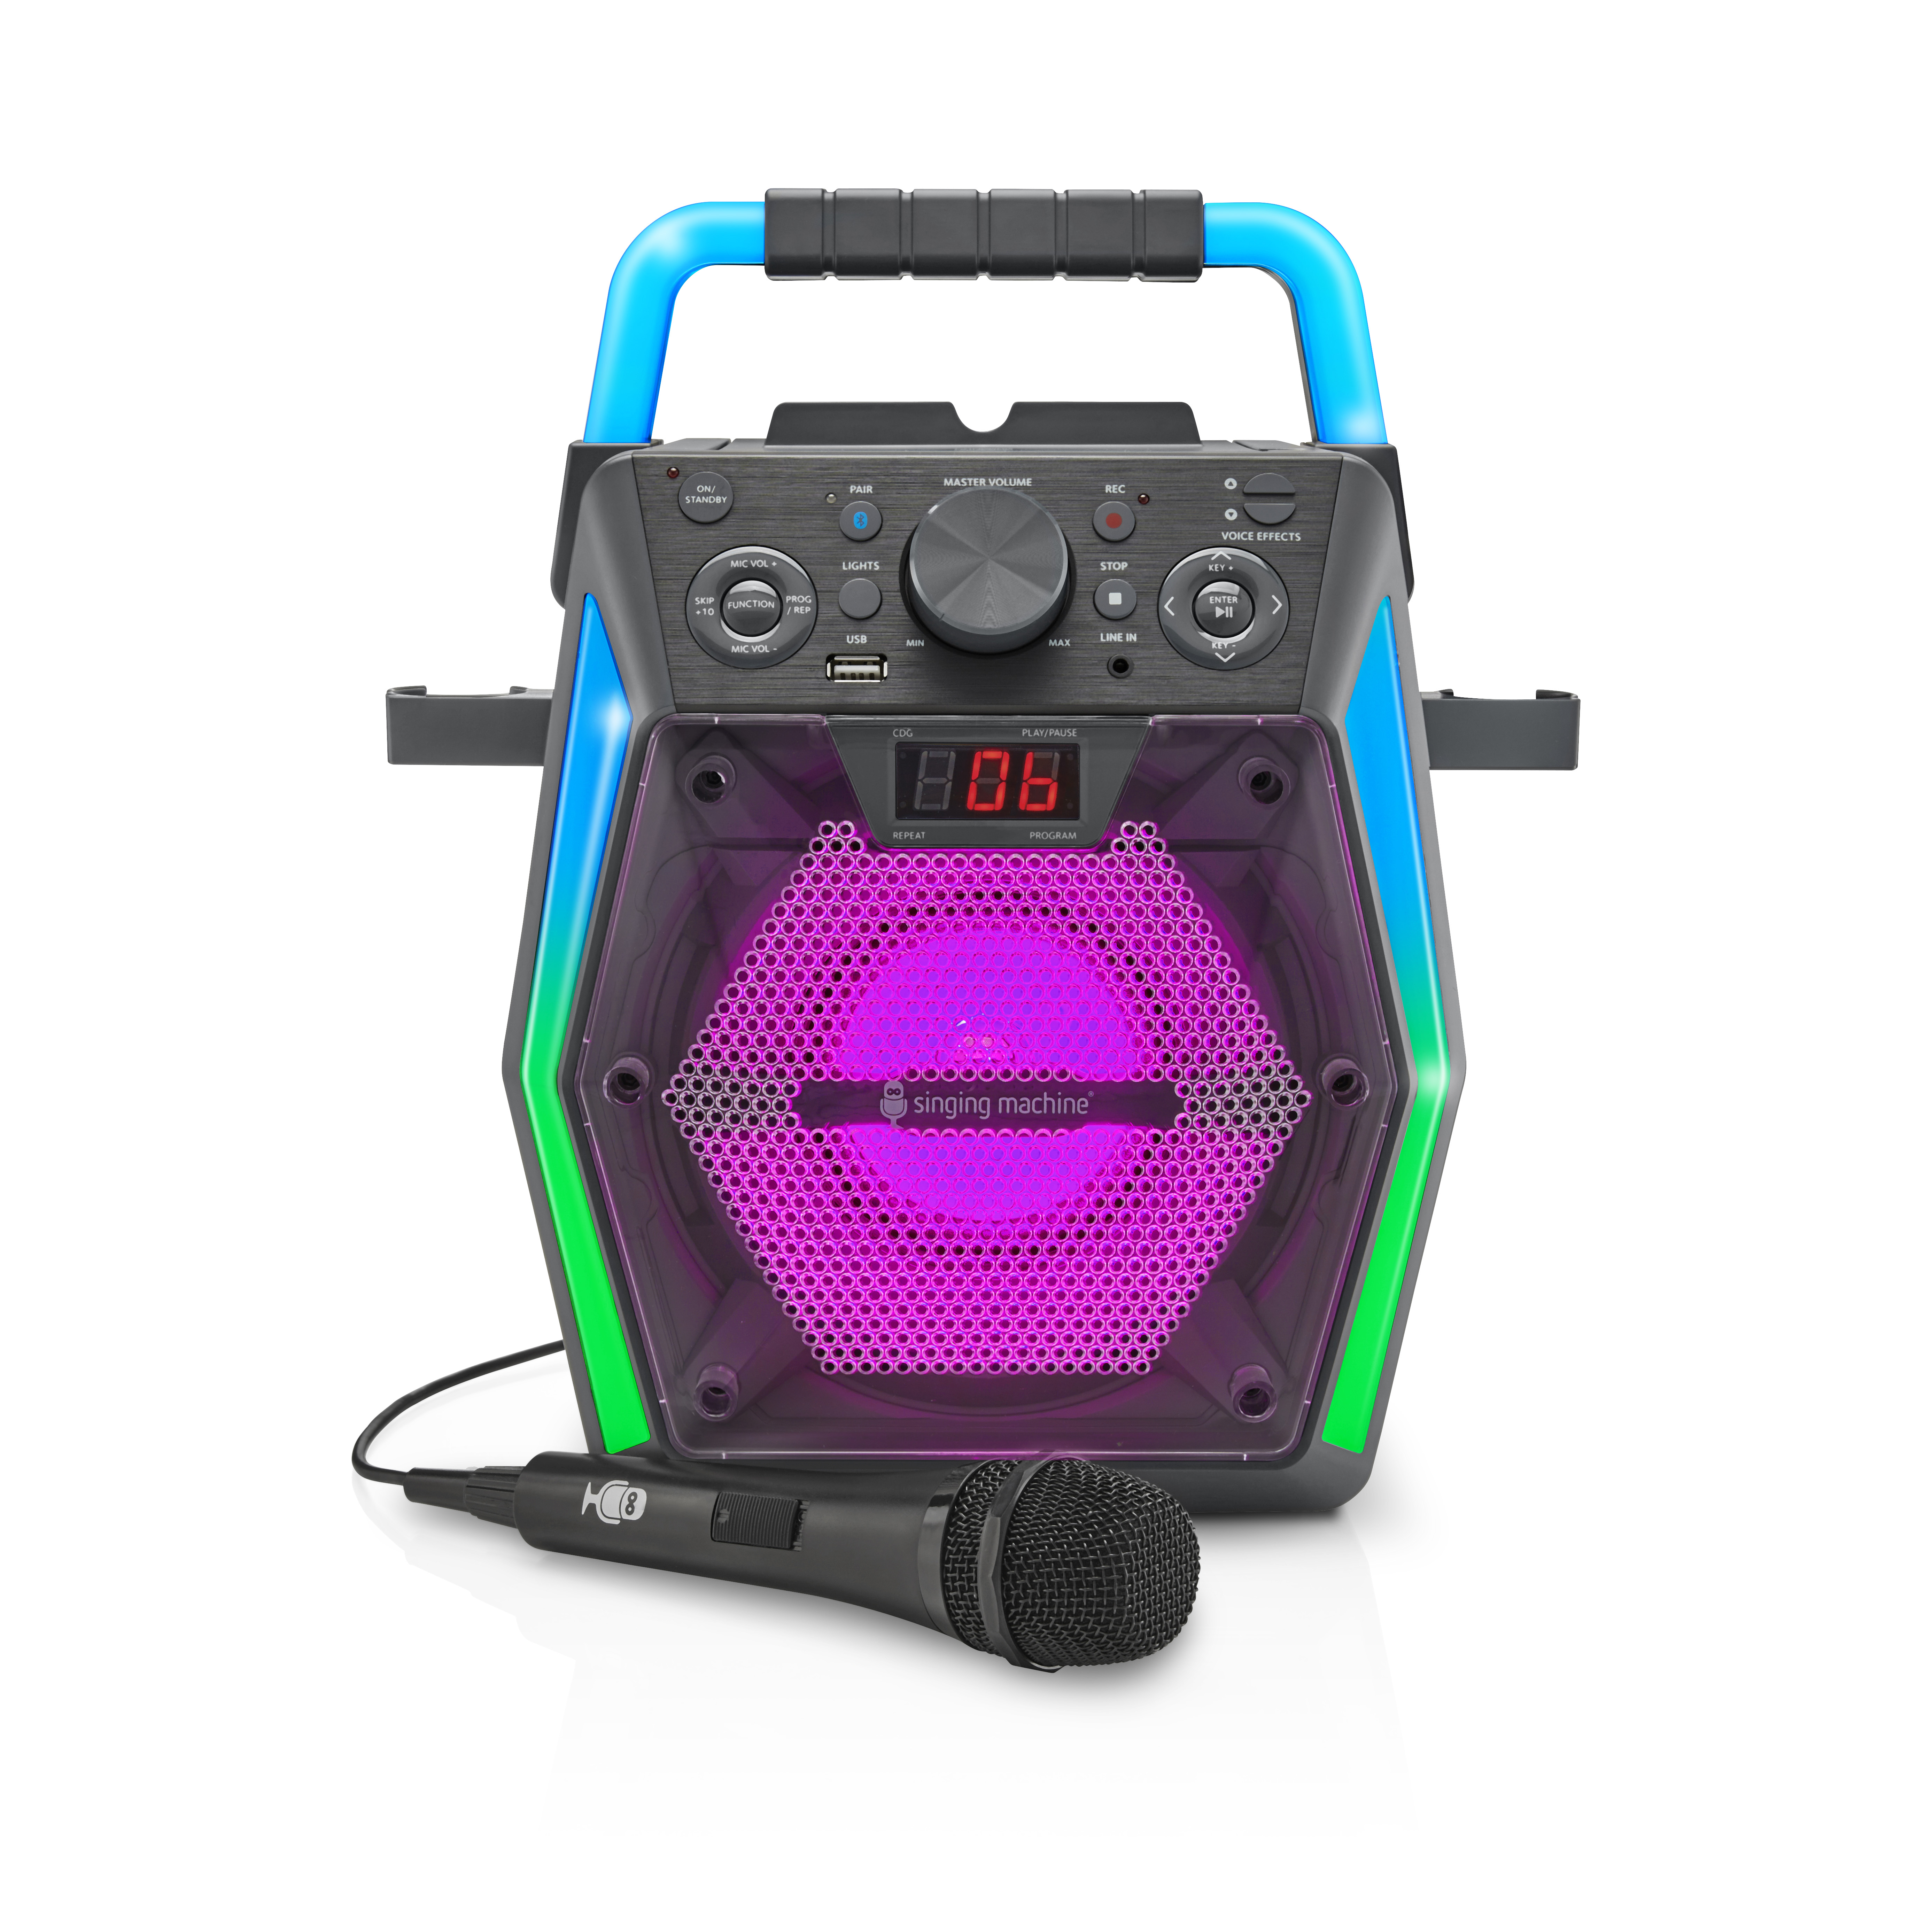 Singing Machine Bluetooth Karaoke SML2300 - image 1 of 10